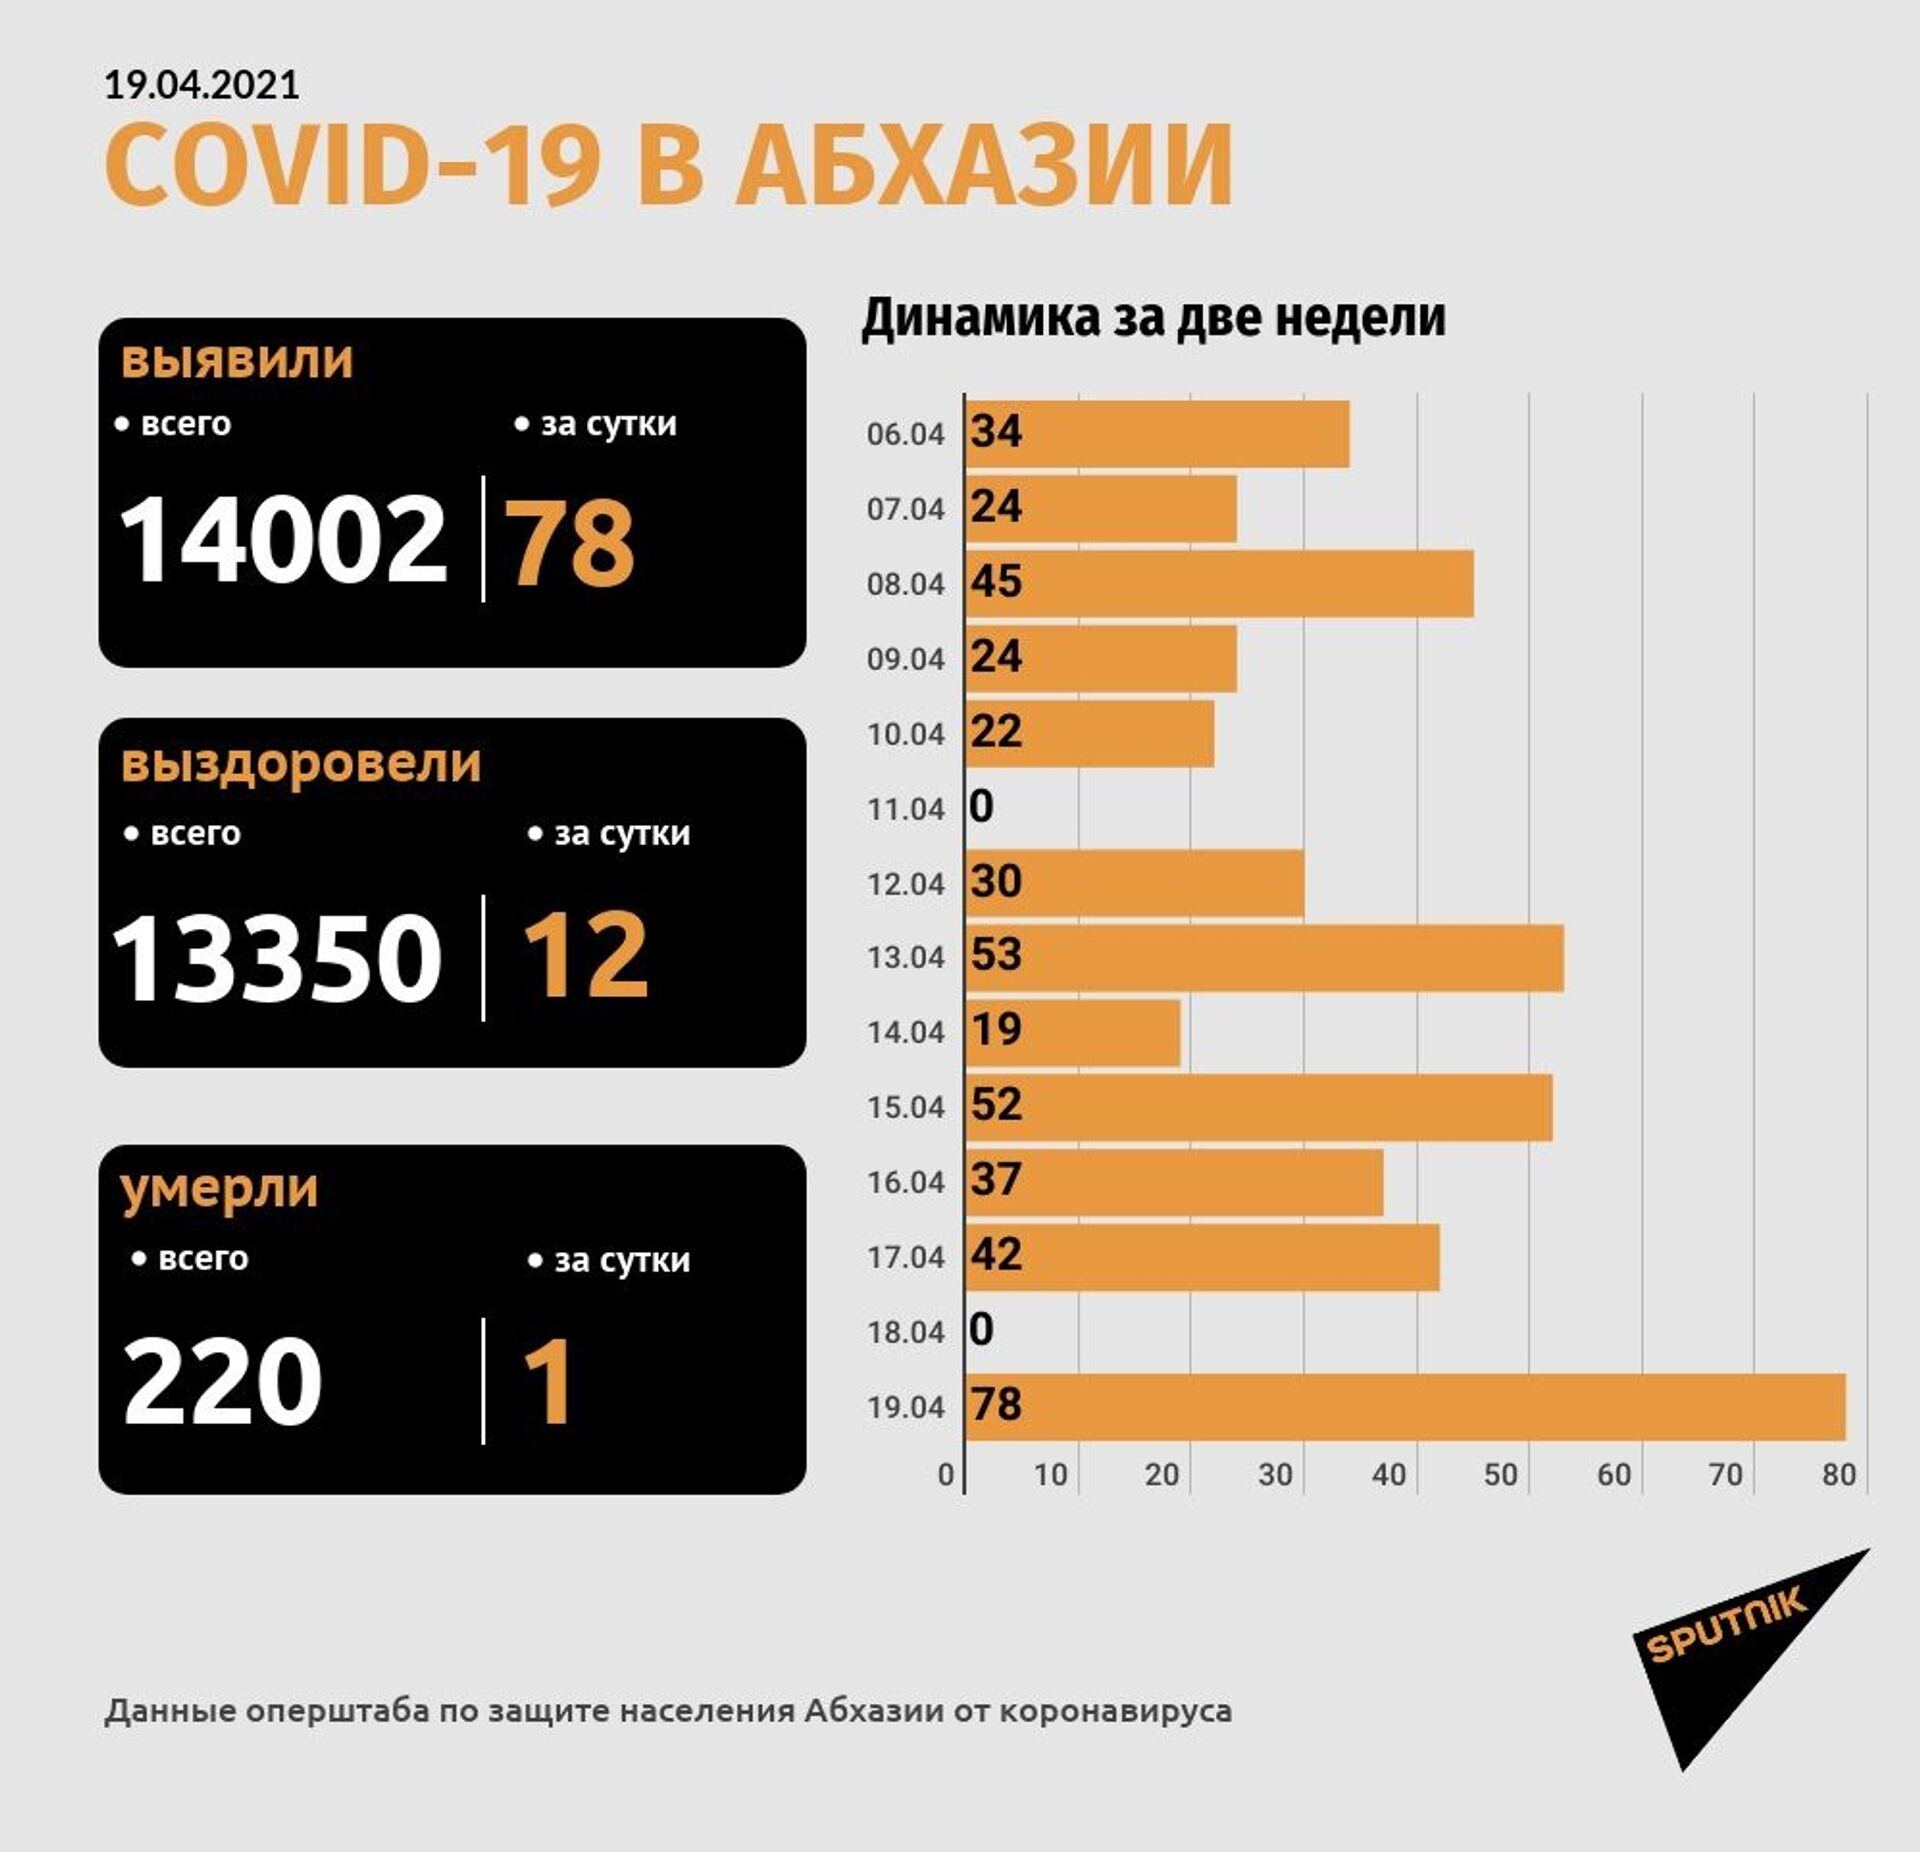 Число смертей от COVID-19 в Абхазии достигло 220  - Sputnik Абхазия, 1920, 19.04.2021